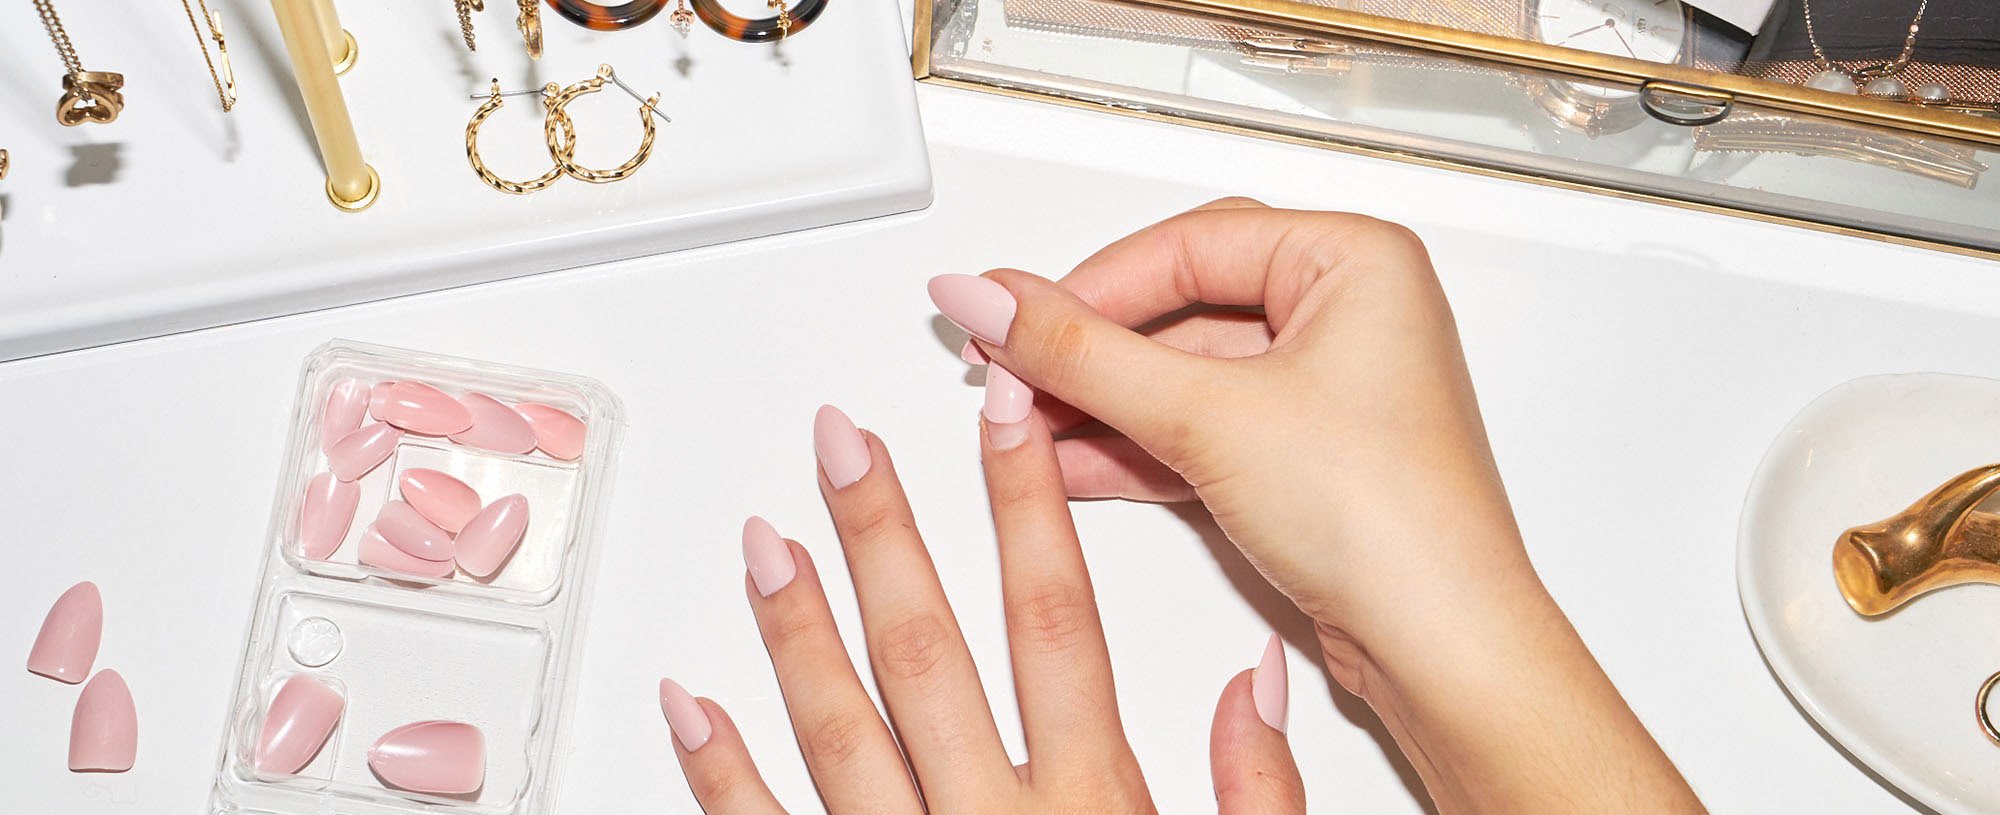 How to Make Press-On Nails Last Longer - L'Oréal Paris